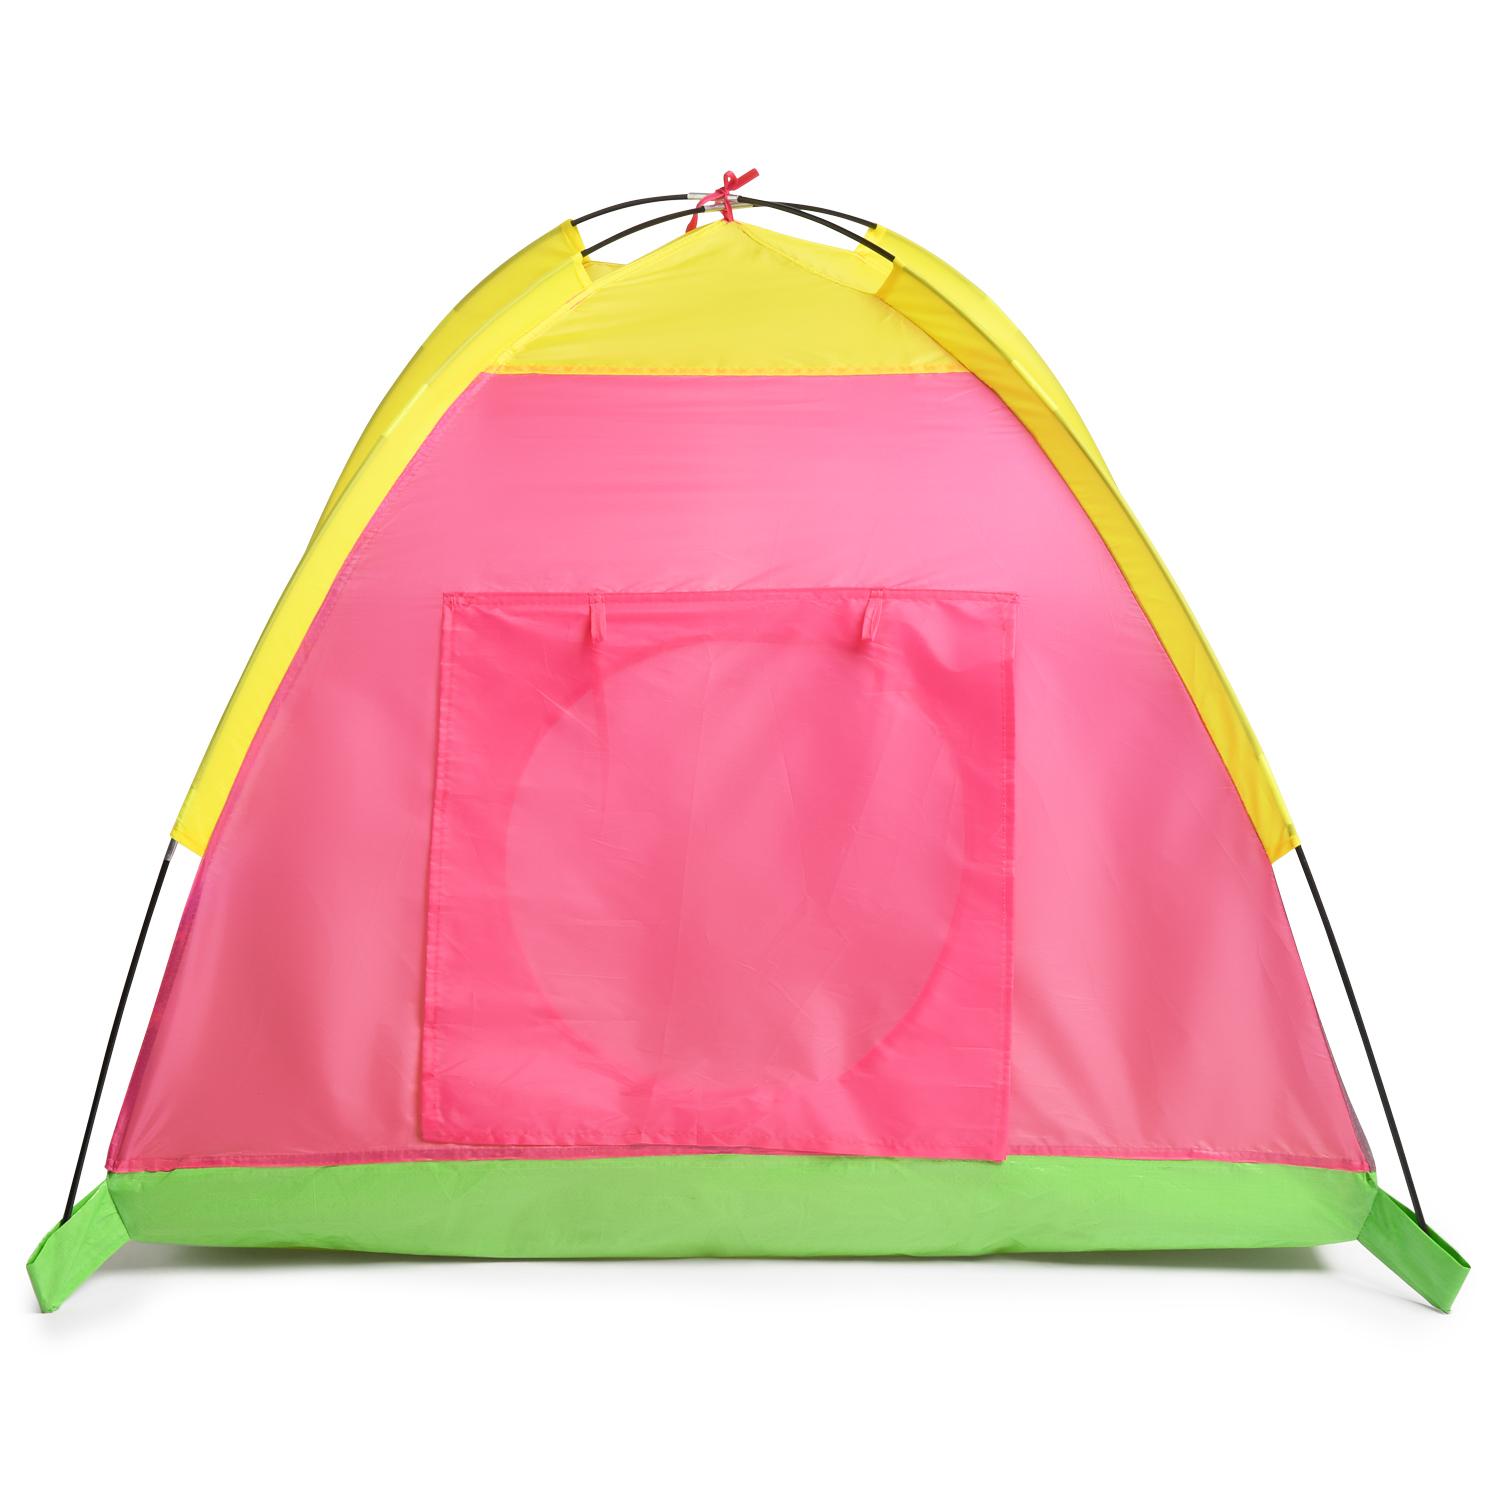 Игровая палатка – Минни Маус  